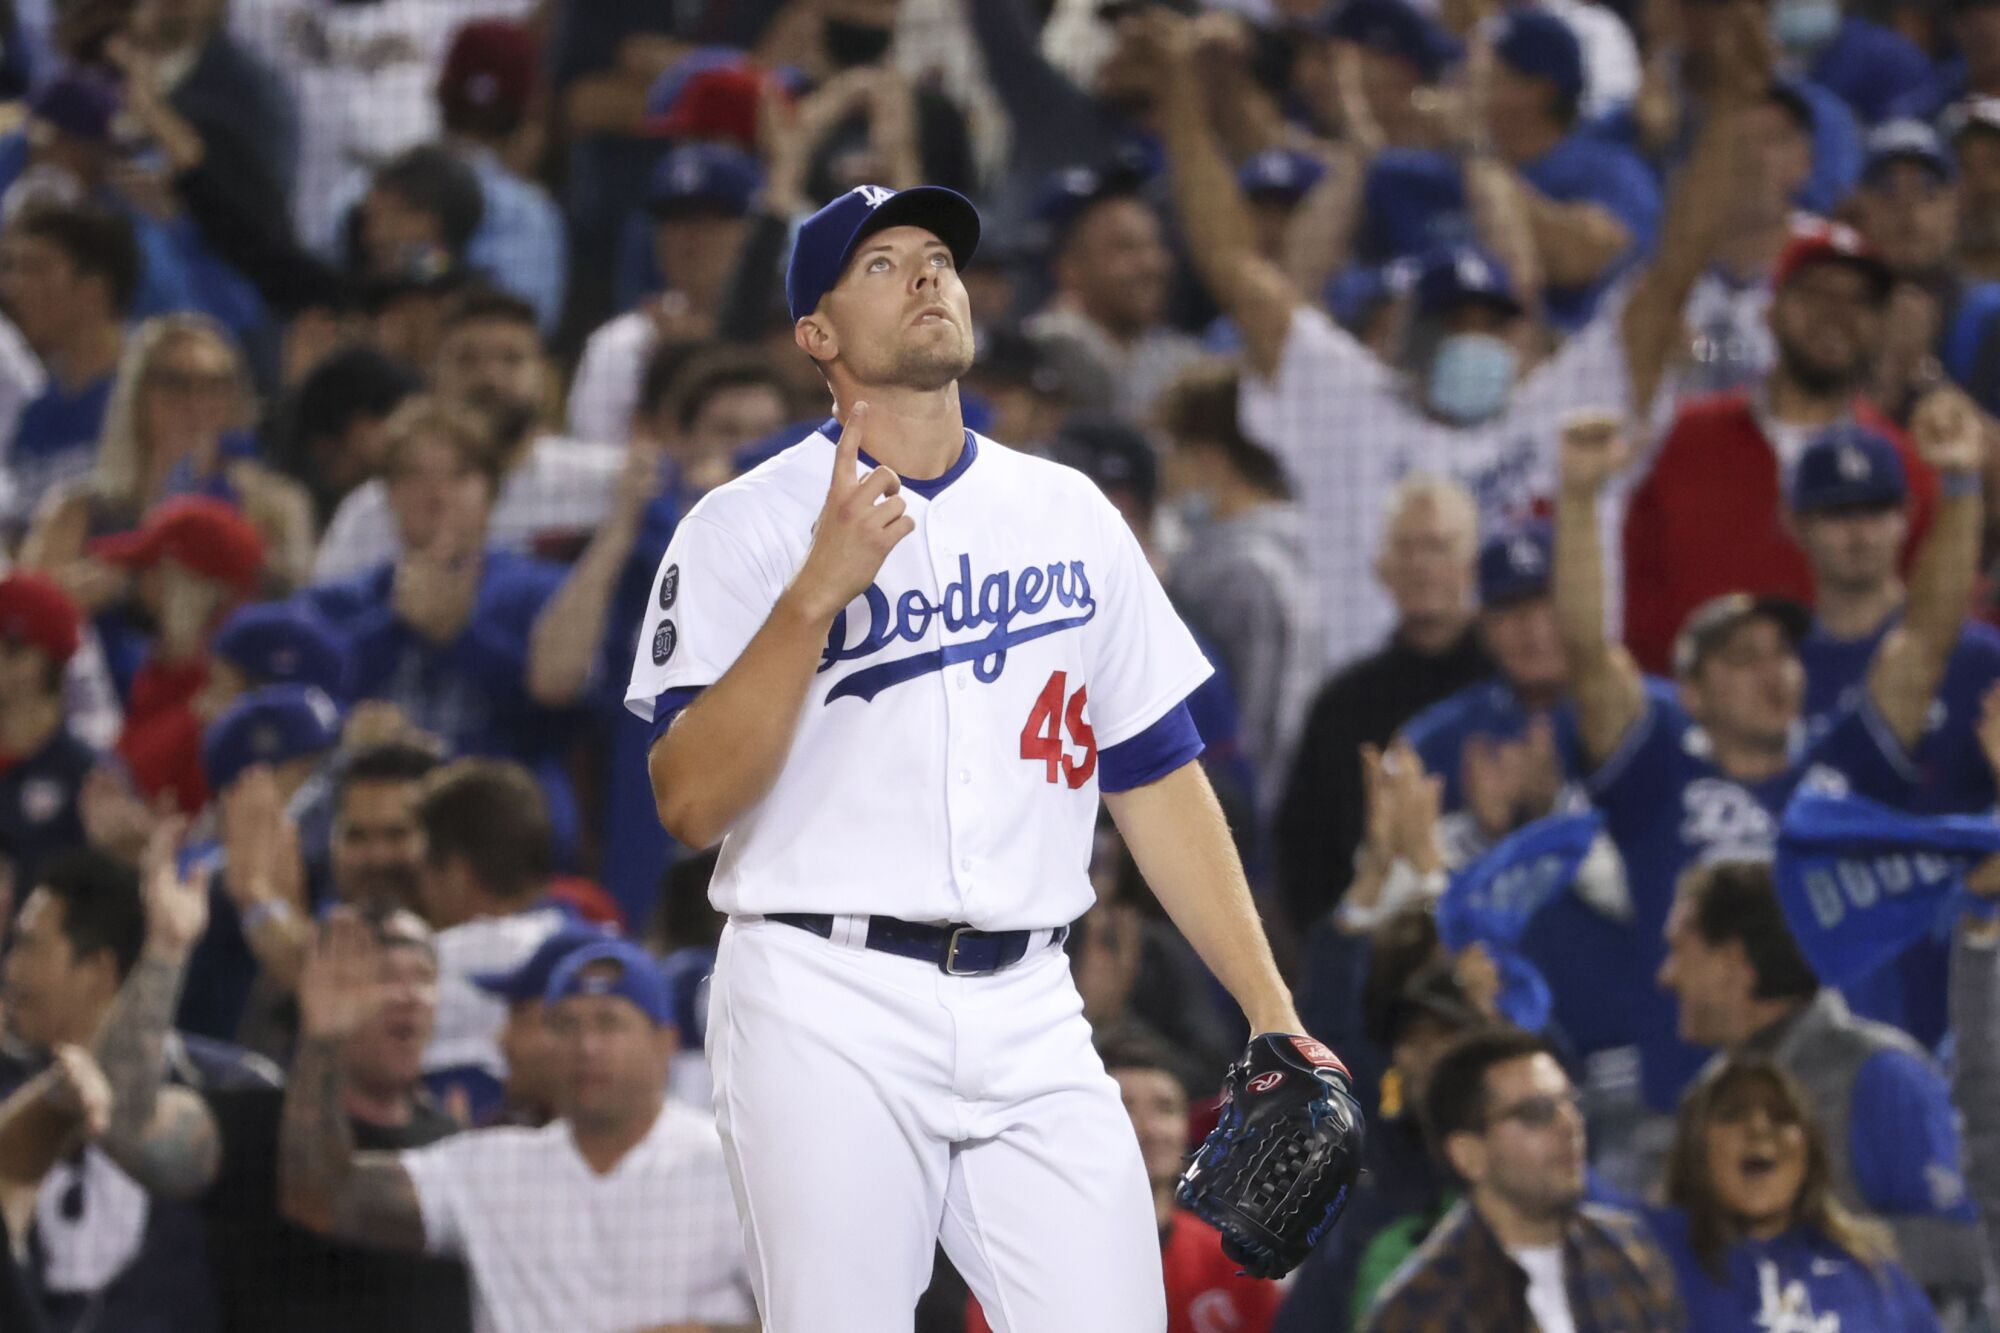 Dodgers reliever Blake Treinen is pointing skyward after retiring in the 2021 playoffs.